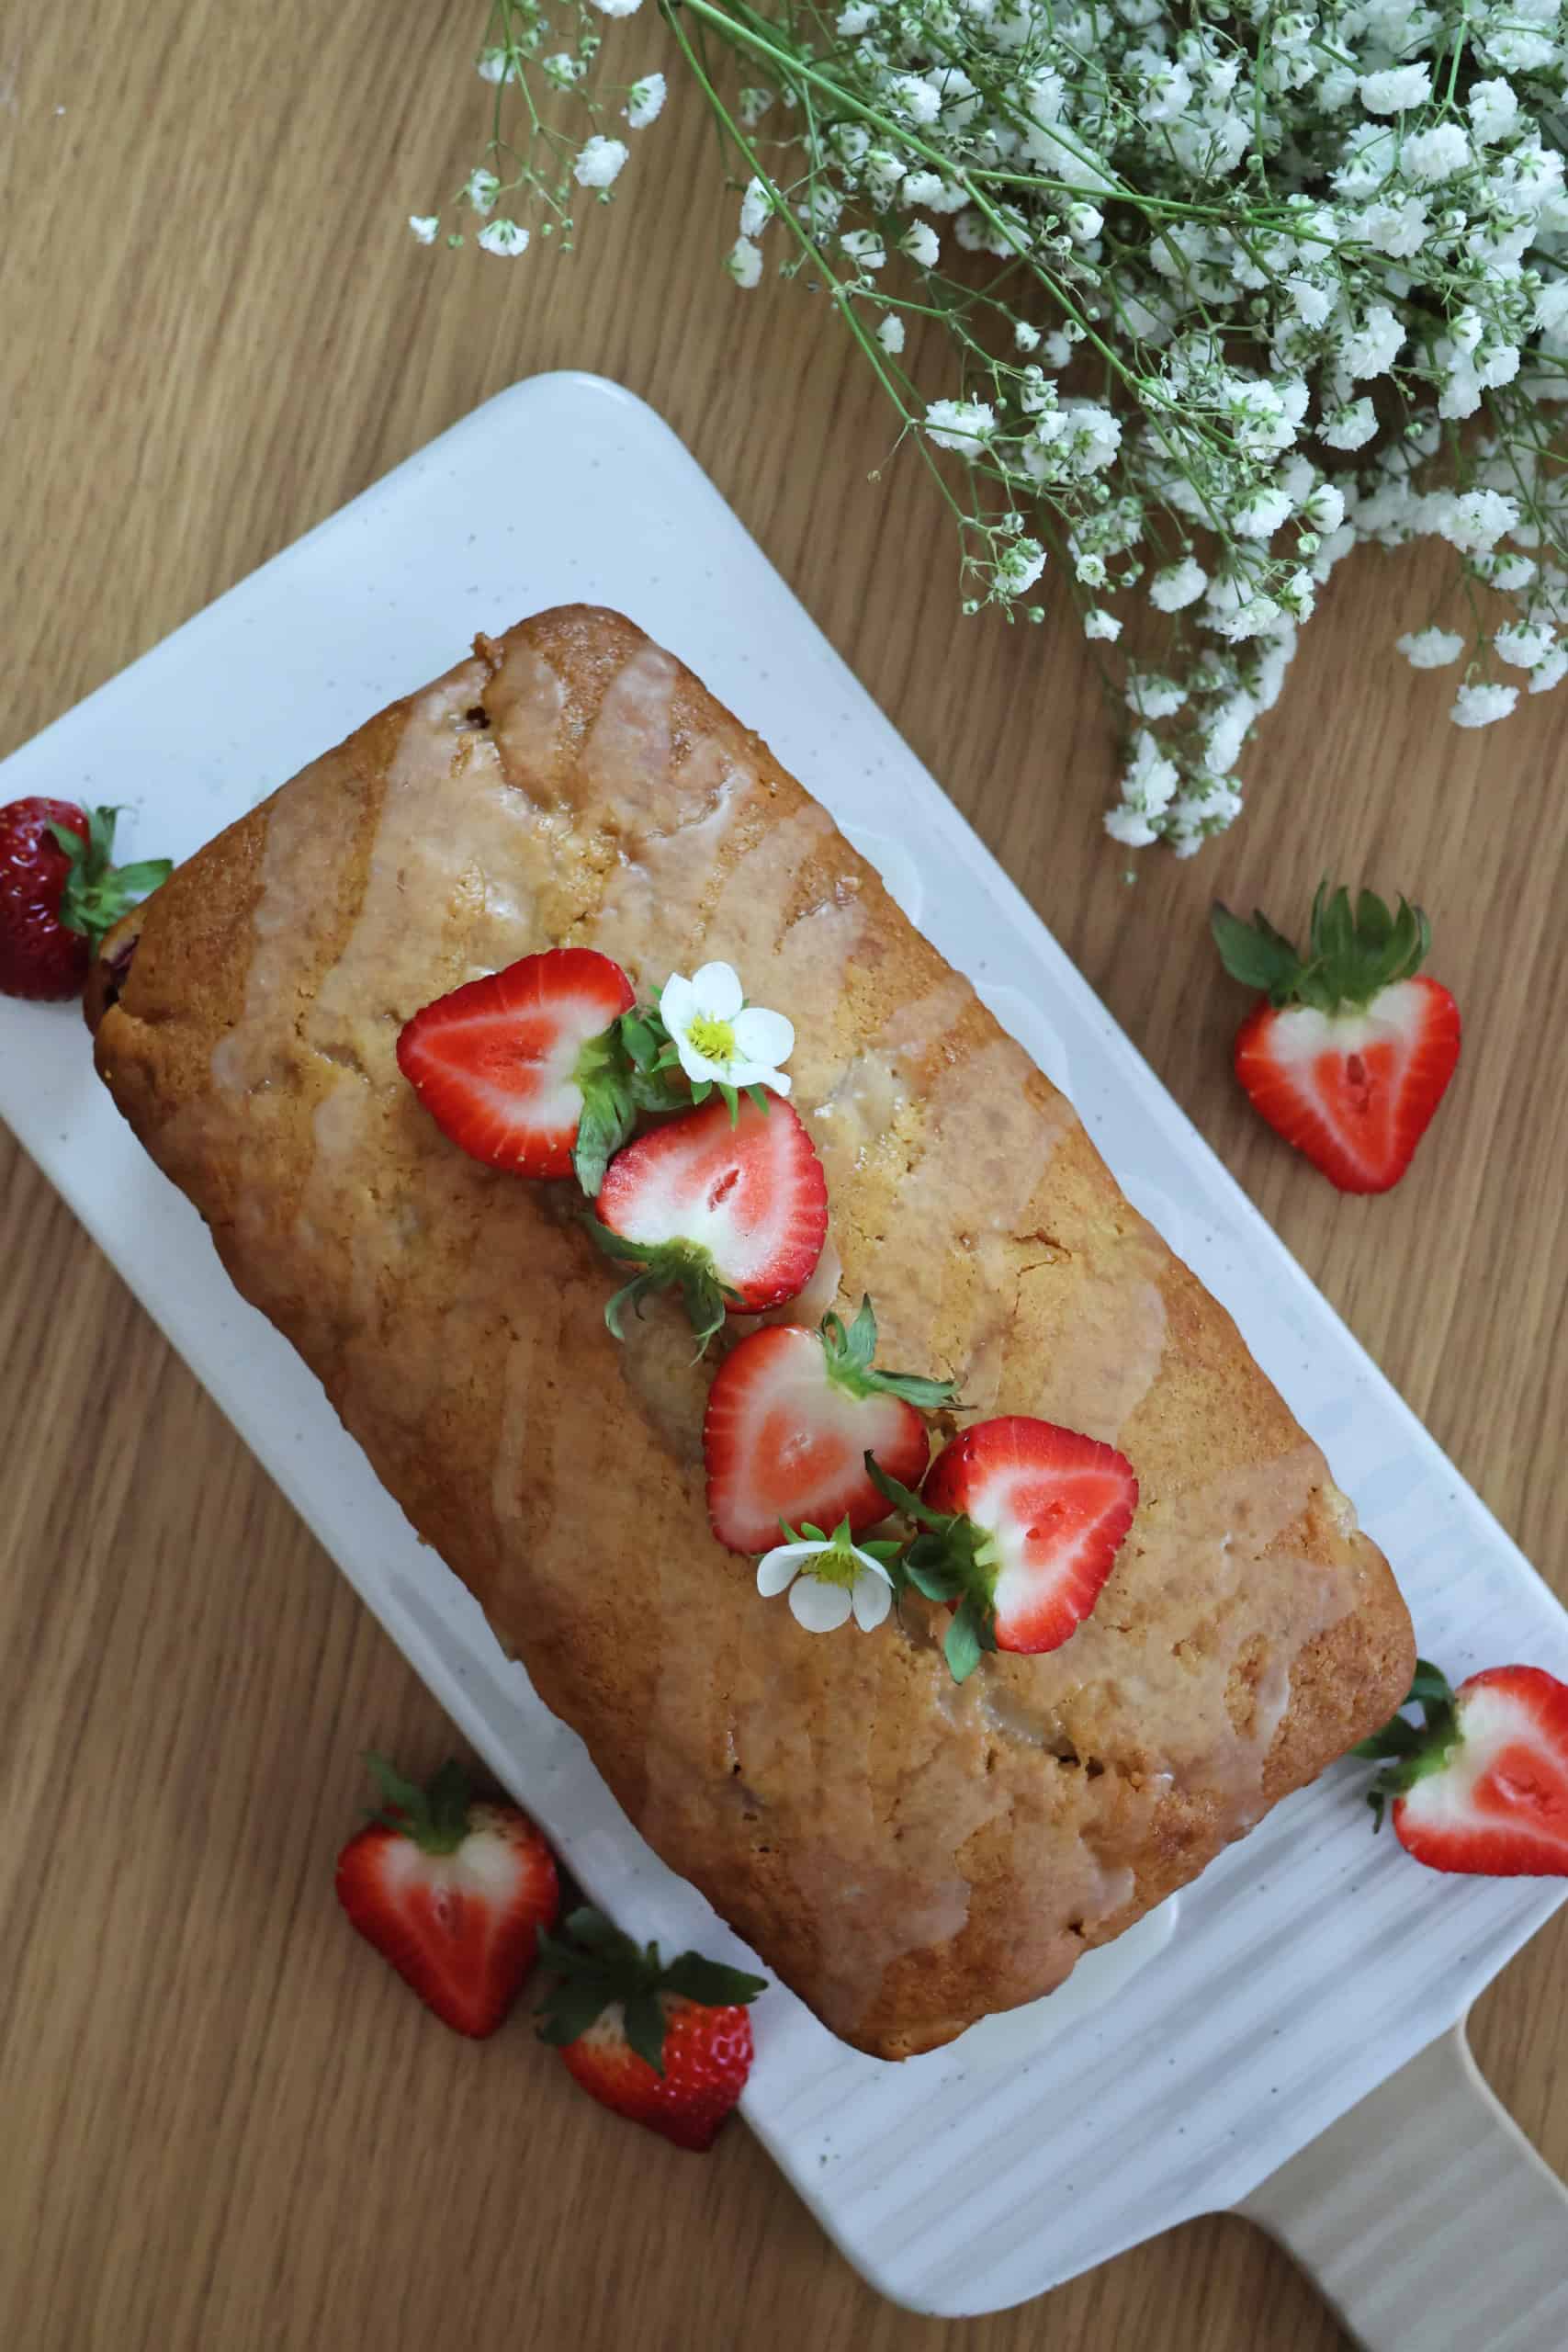 strawberry pound cake recipe with glaze